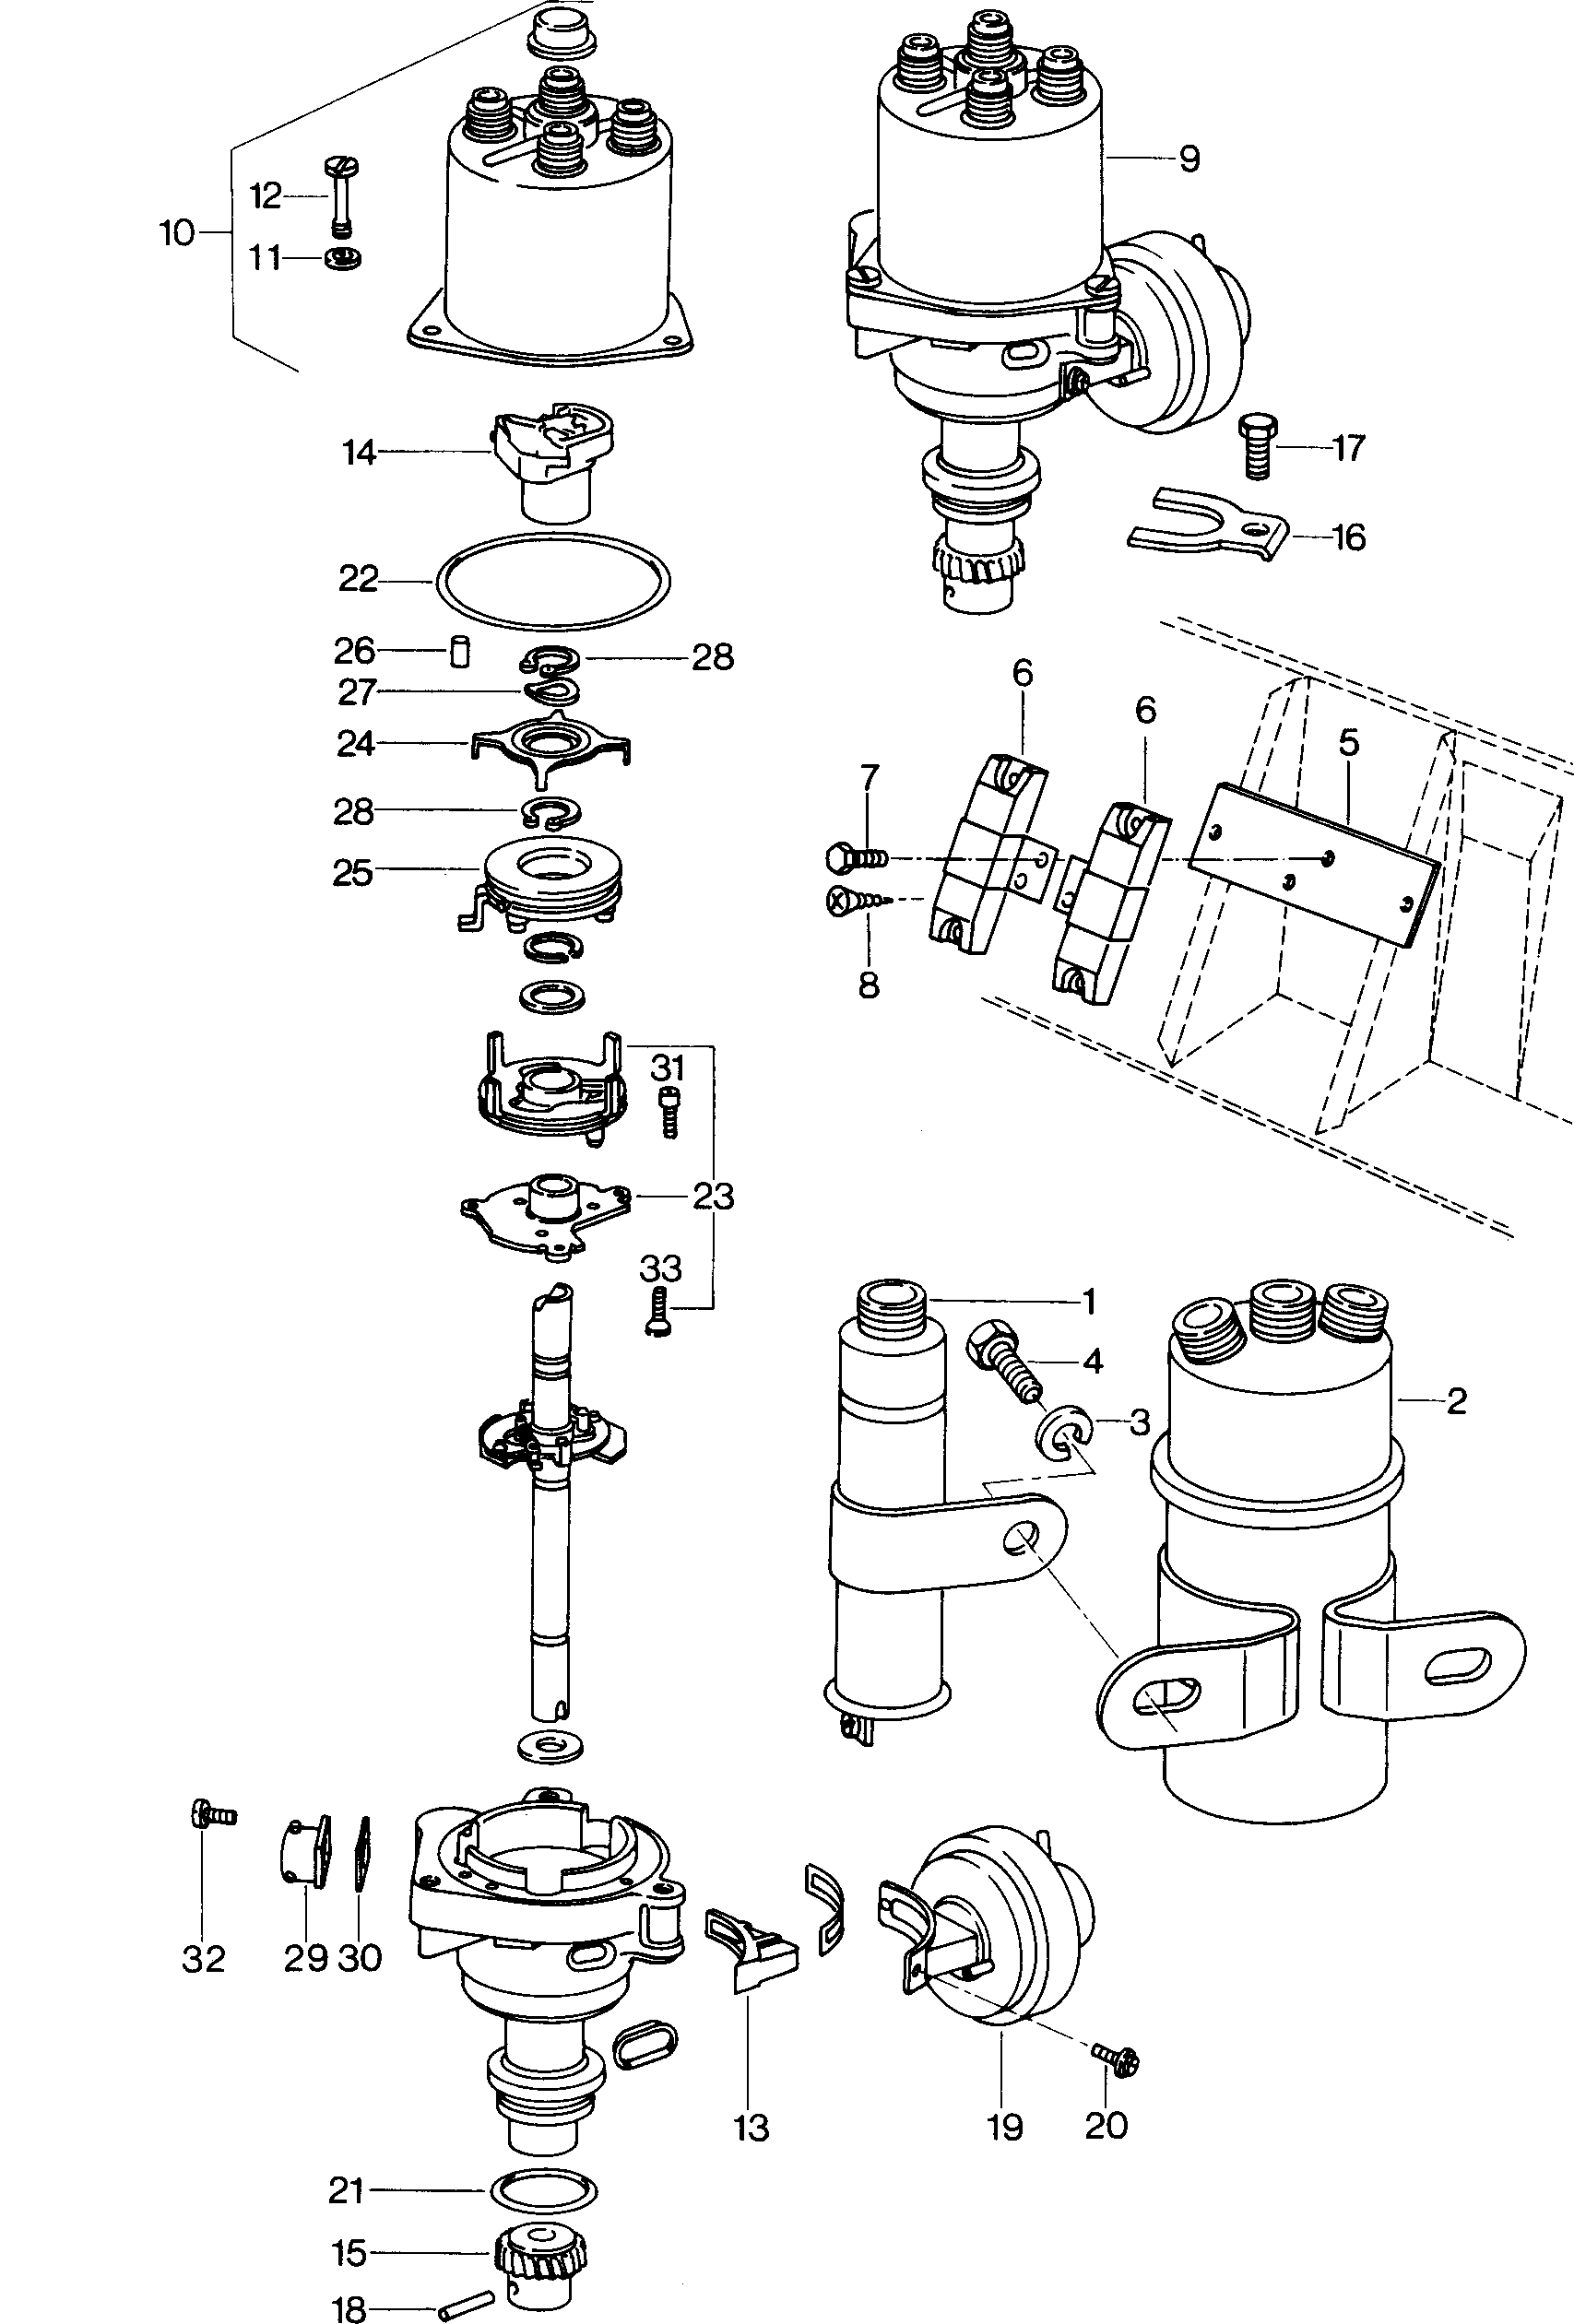 bobina accensionespinteroneno 24V - Mod.181 / Iltis - ilt